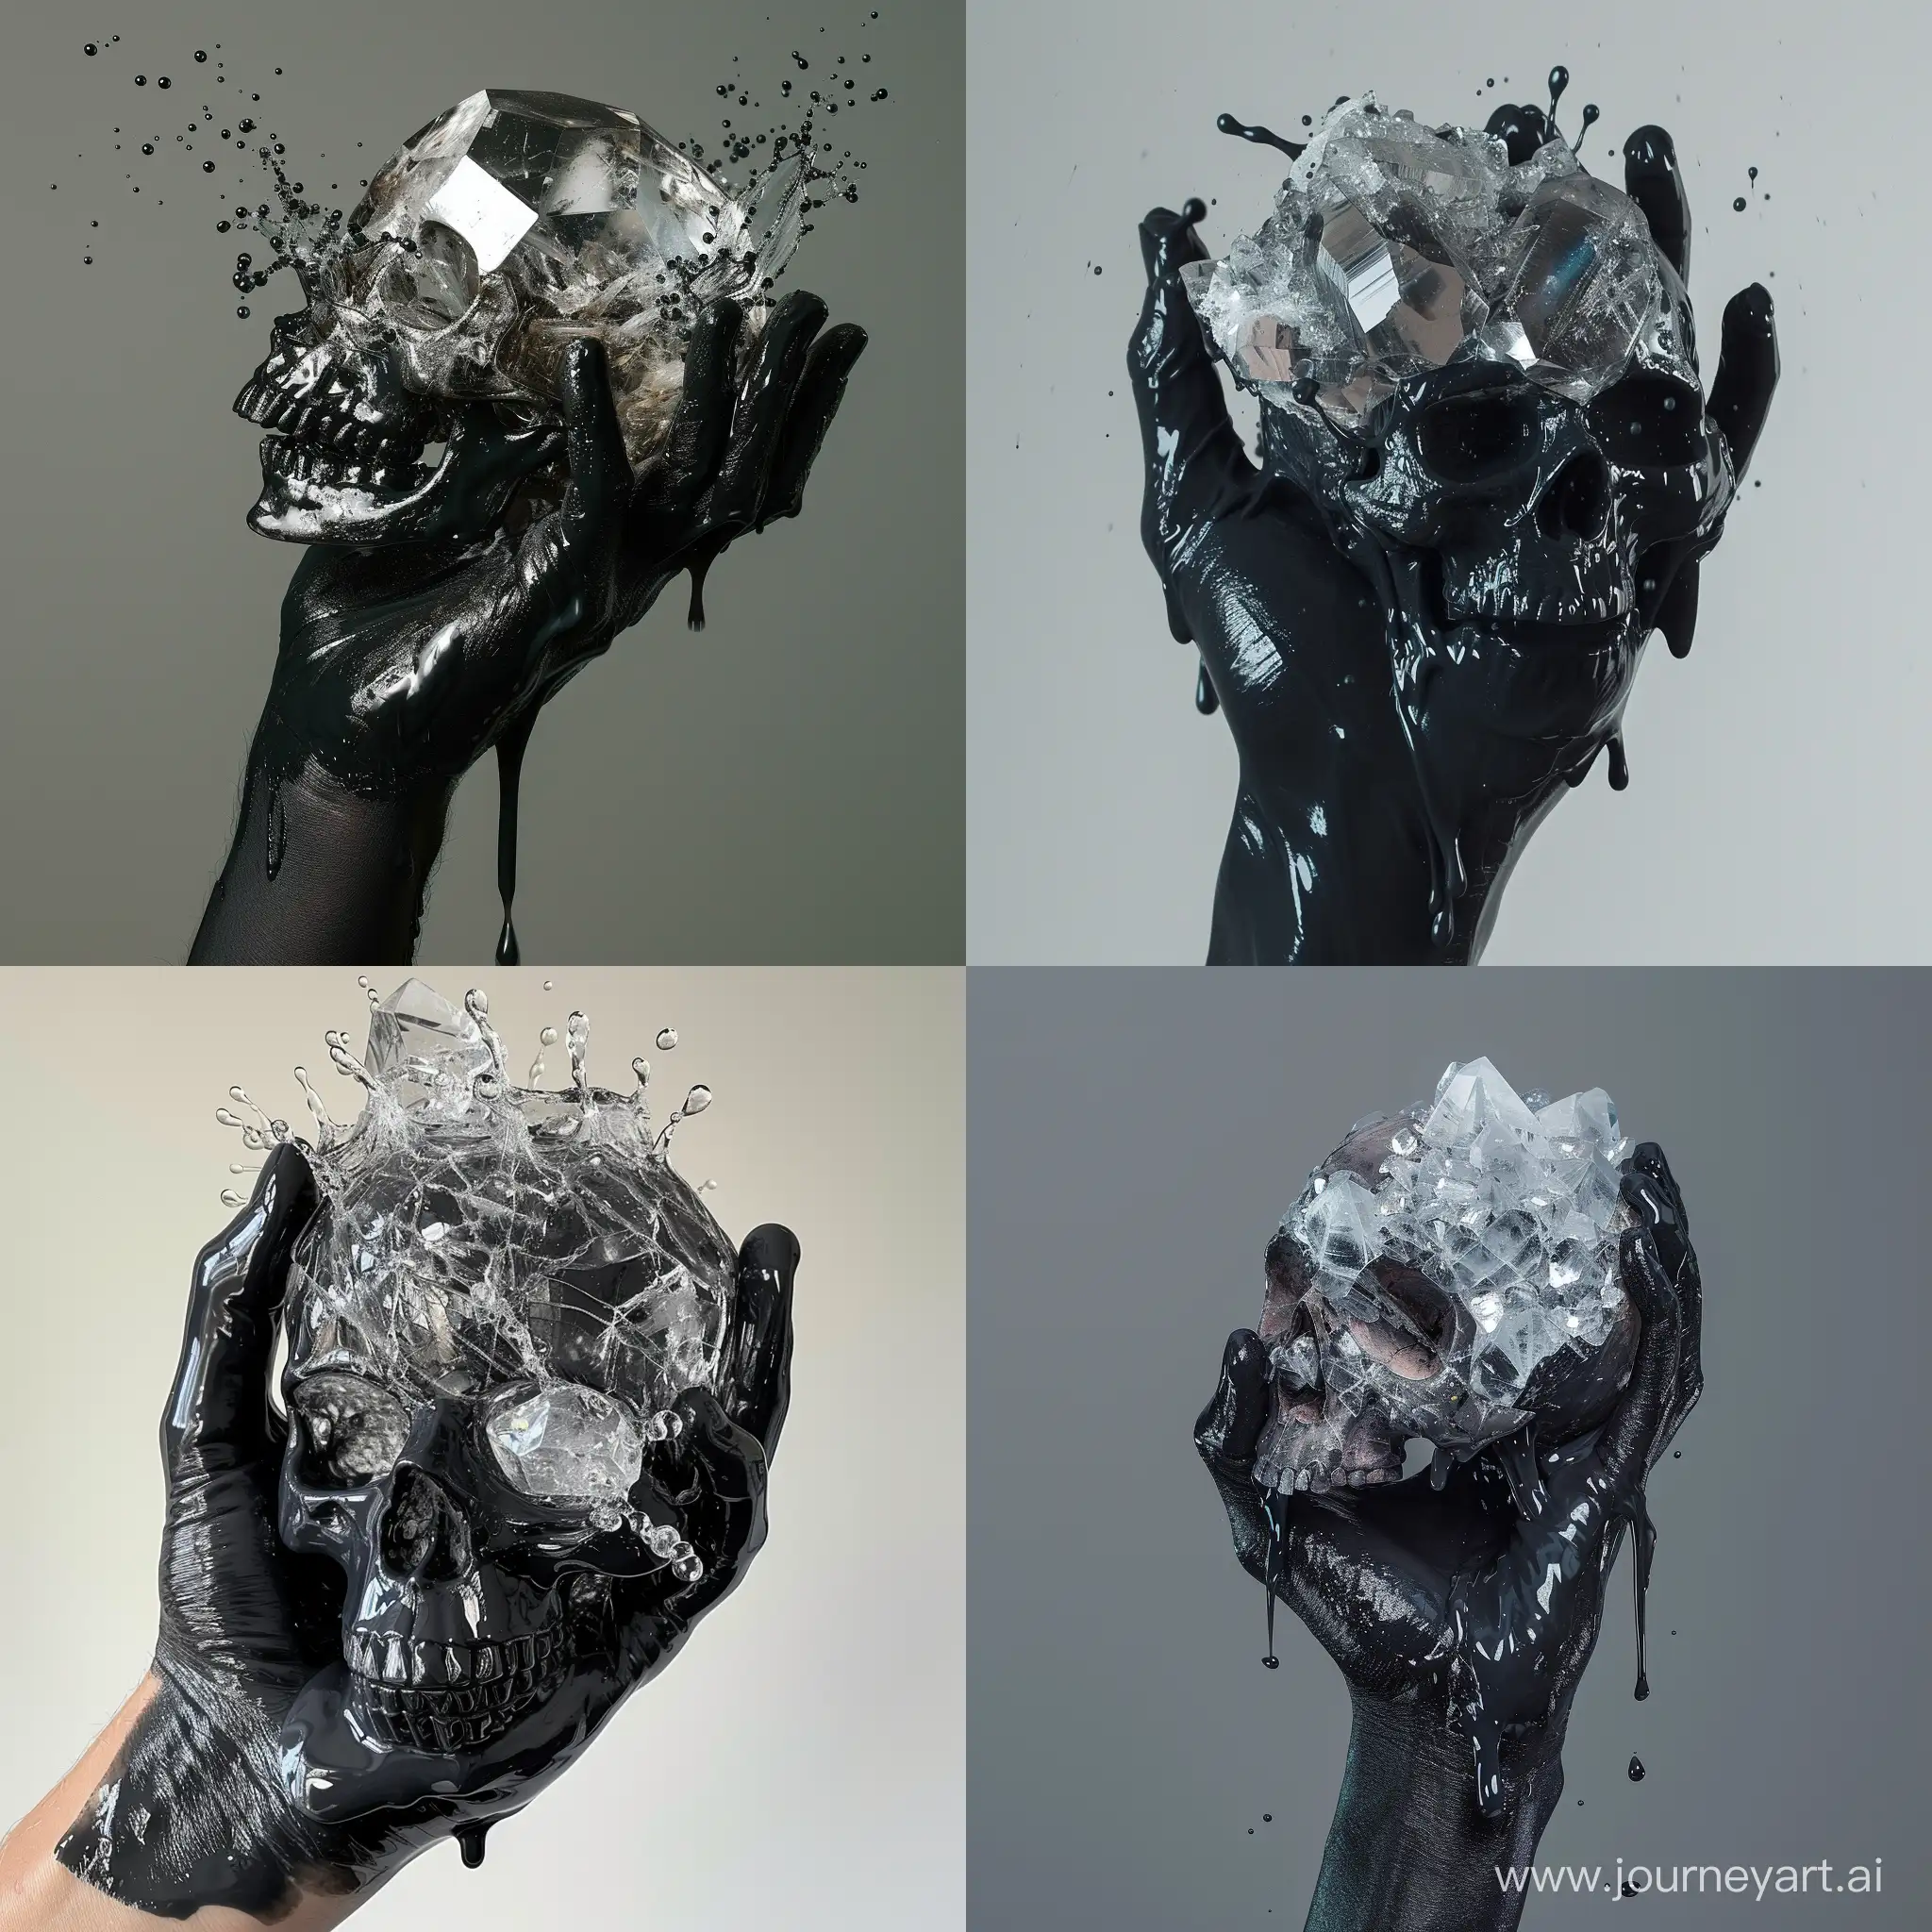 Muddy dripping black hand holding cracked crystal gem skull that’s full of slime splashing